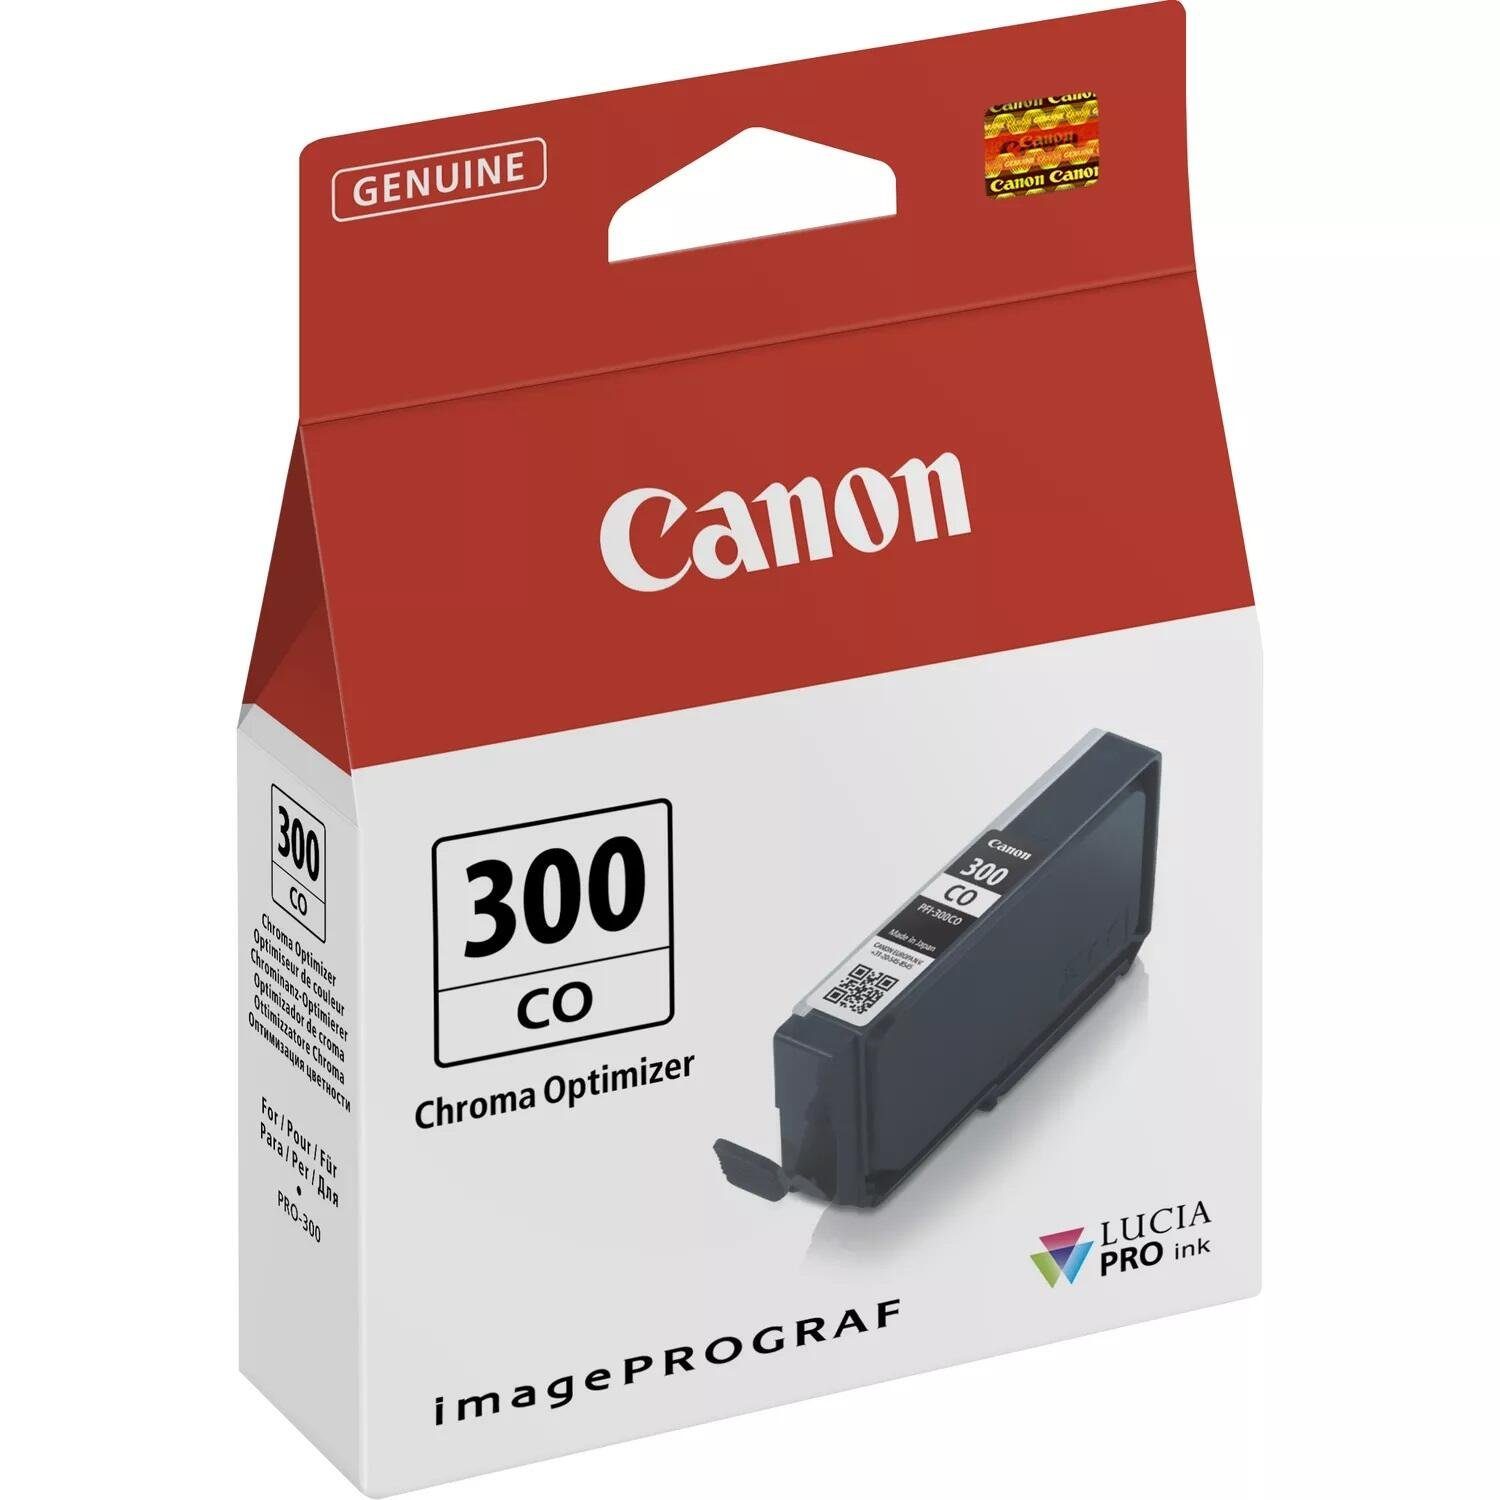 Canon Canon PFI-300CO Druckerpatrone Chroma Optimizer Tintenpatrone